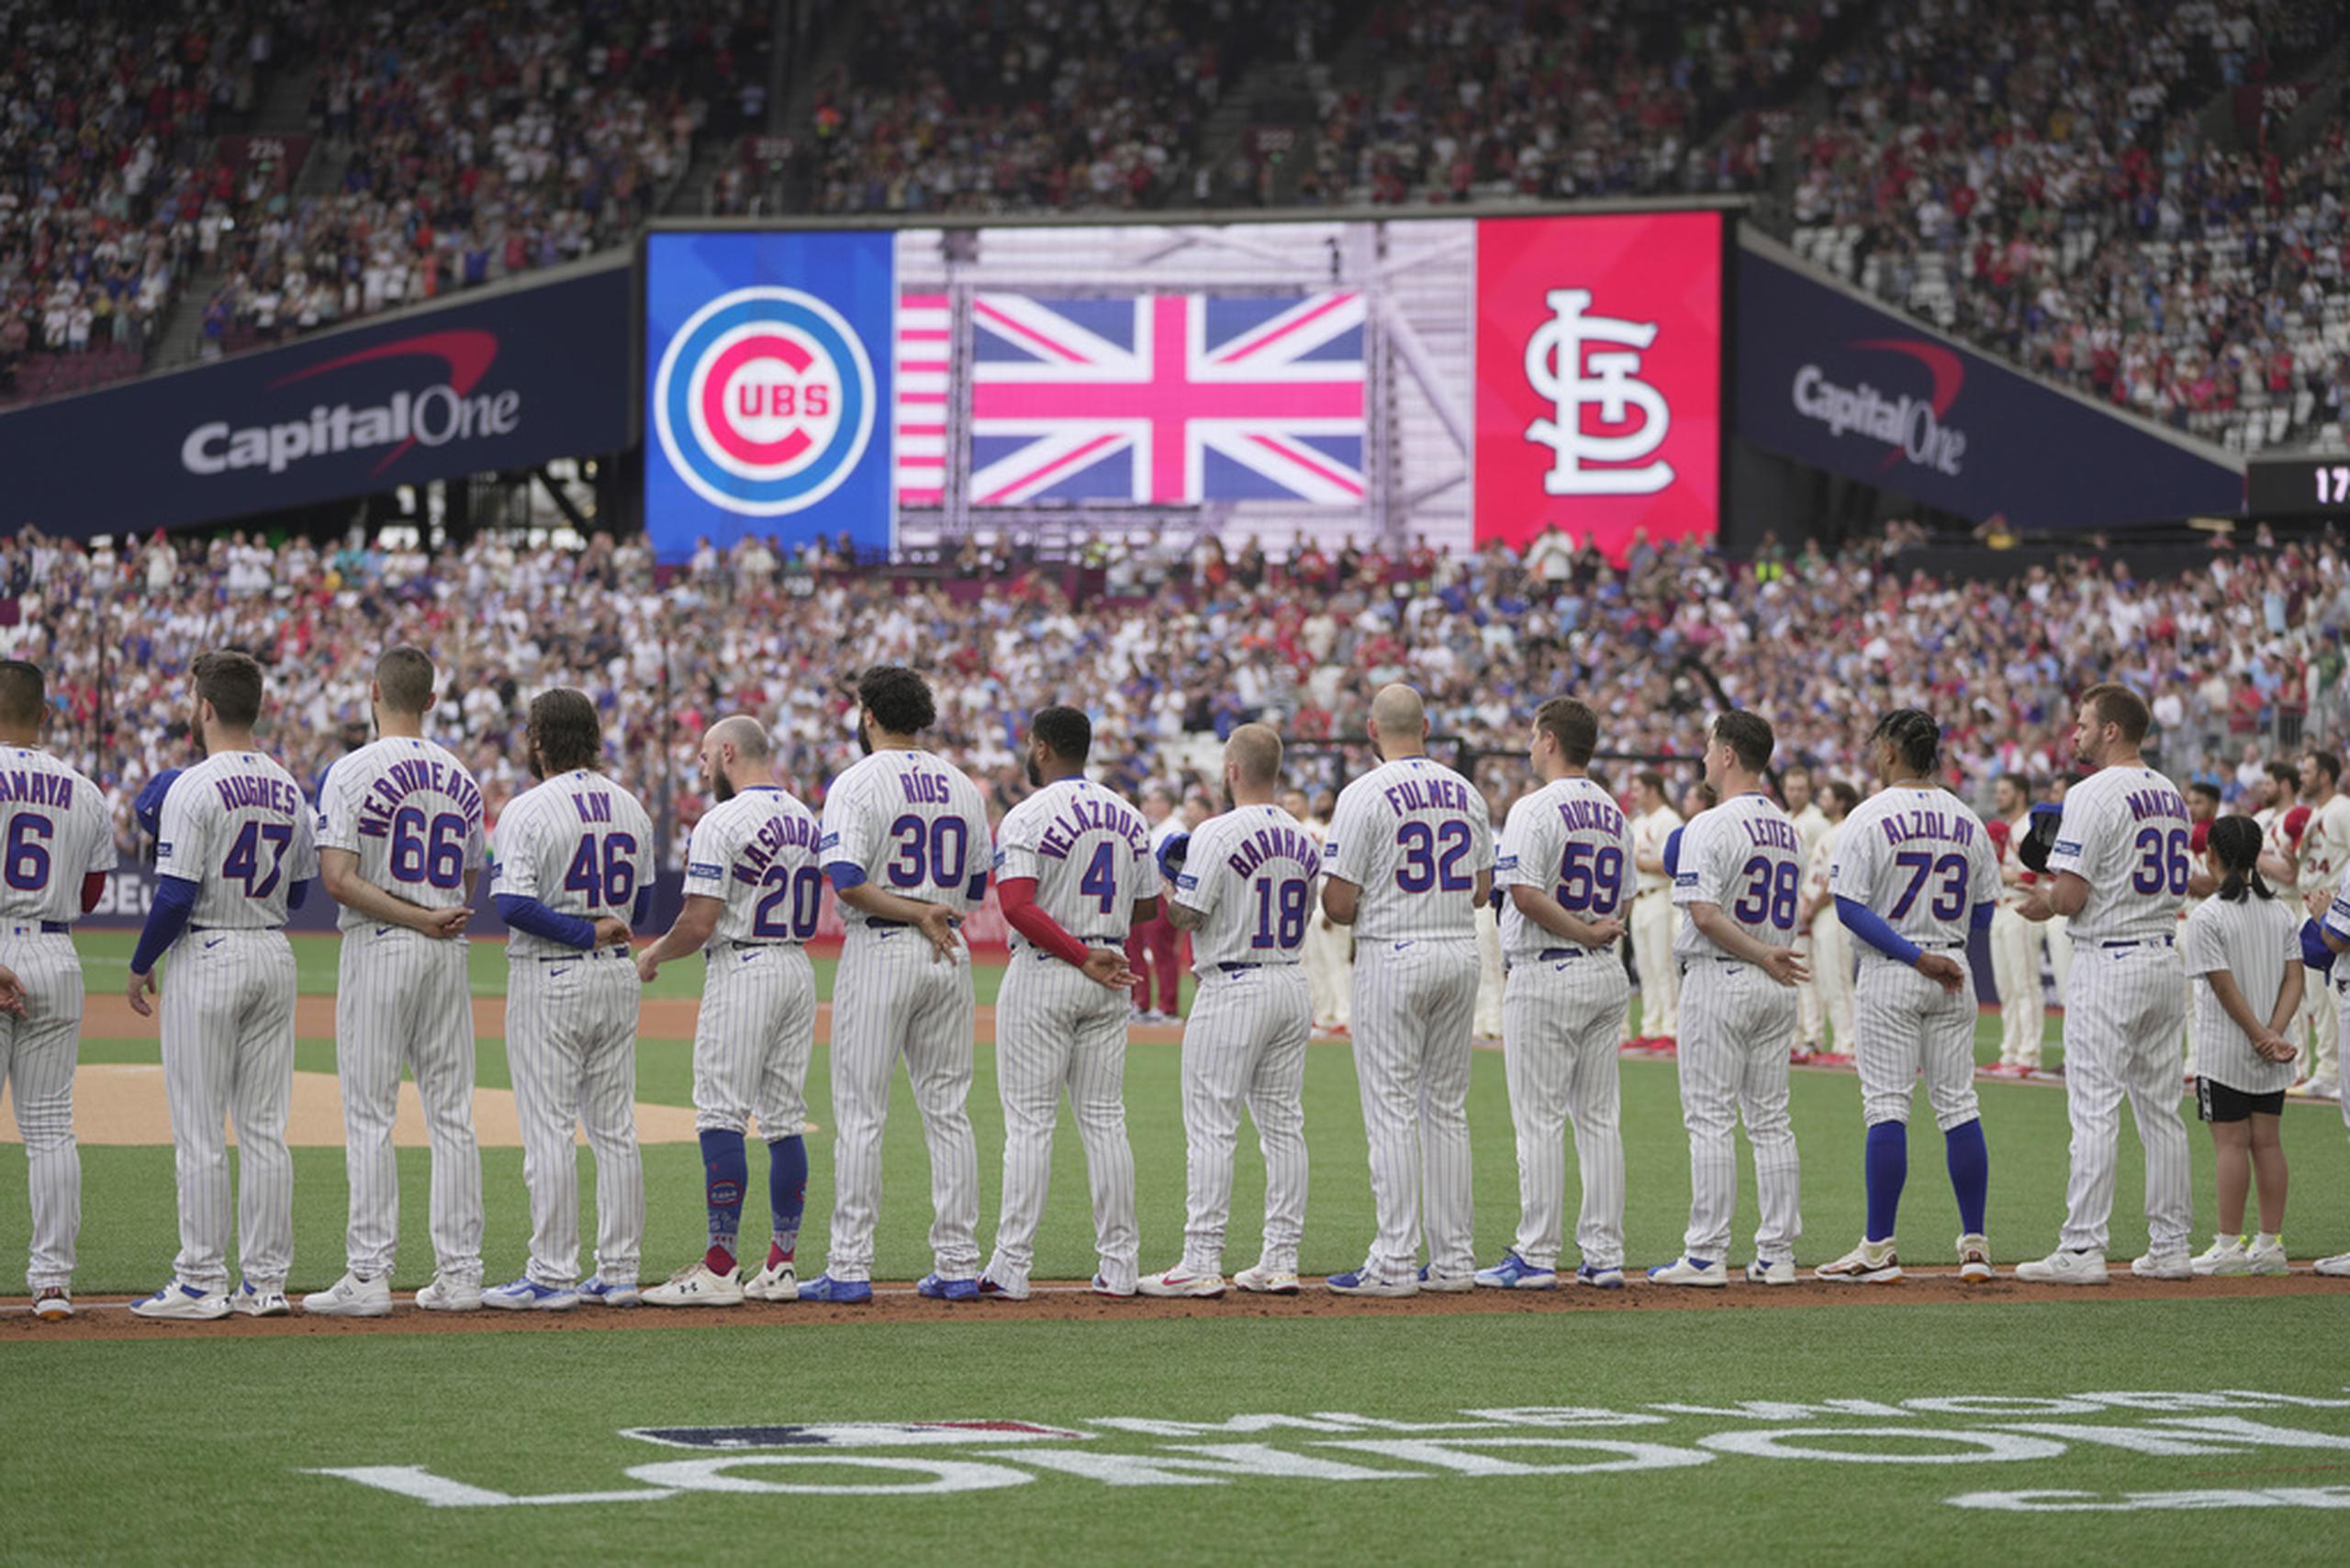 Jugadores de los Cubs de Chicago se alinean durante la ceremonia de los himnos de Estados Unidos e Inglaterra previo al partido de béisbol en contra de los Cardinals de San Luis.